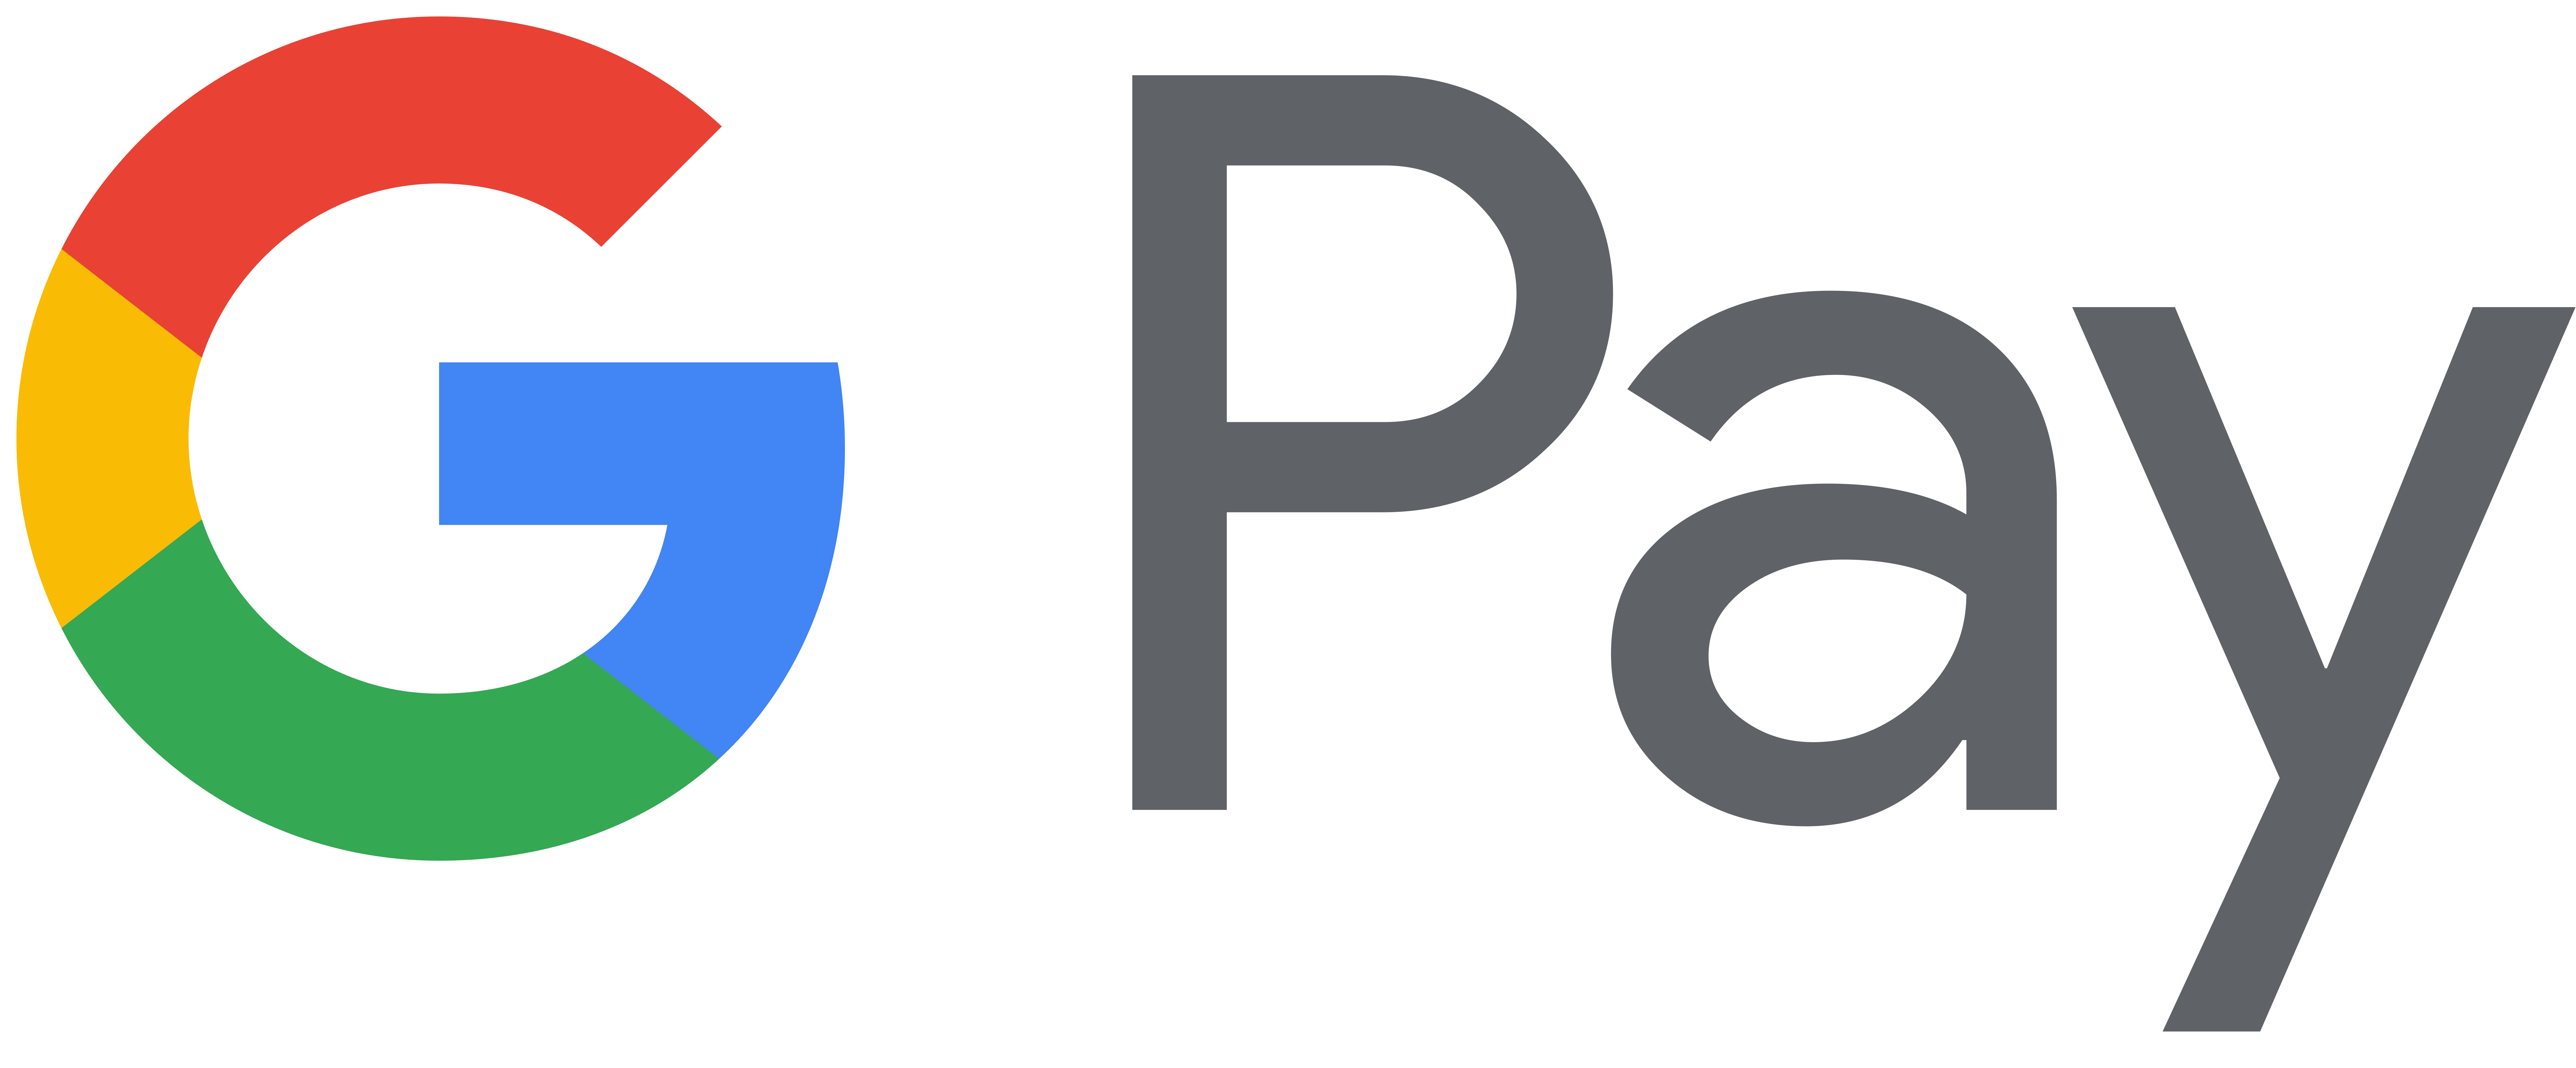 صفحة الويب Google Logo PNG